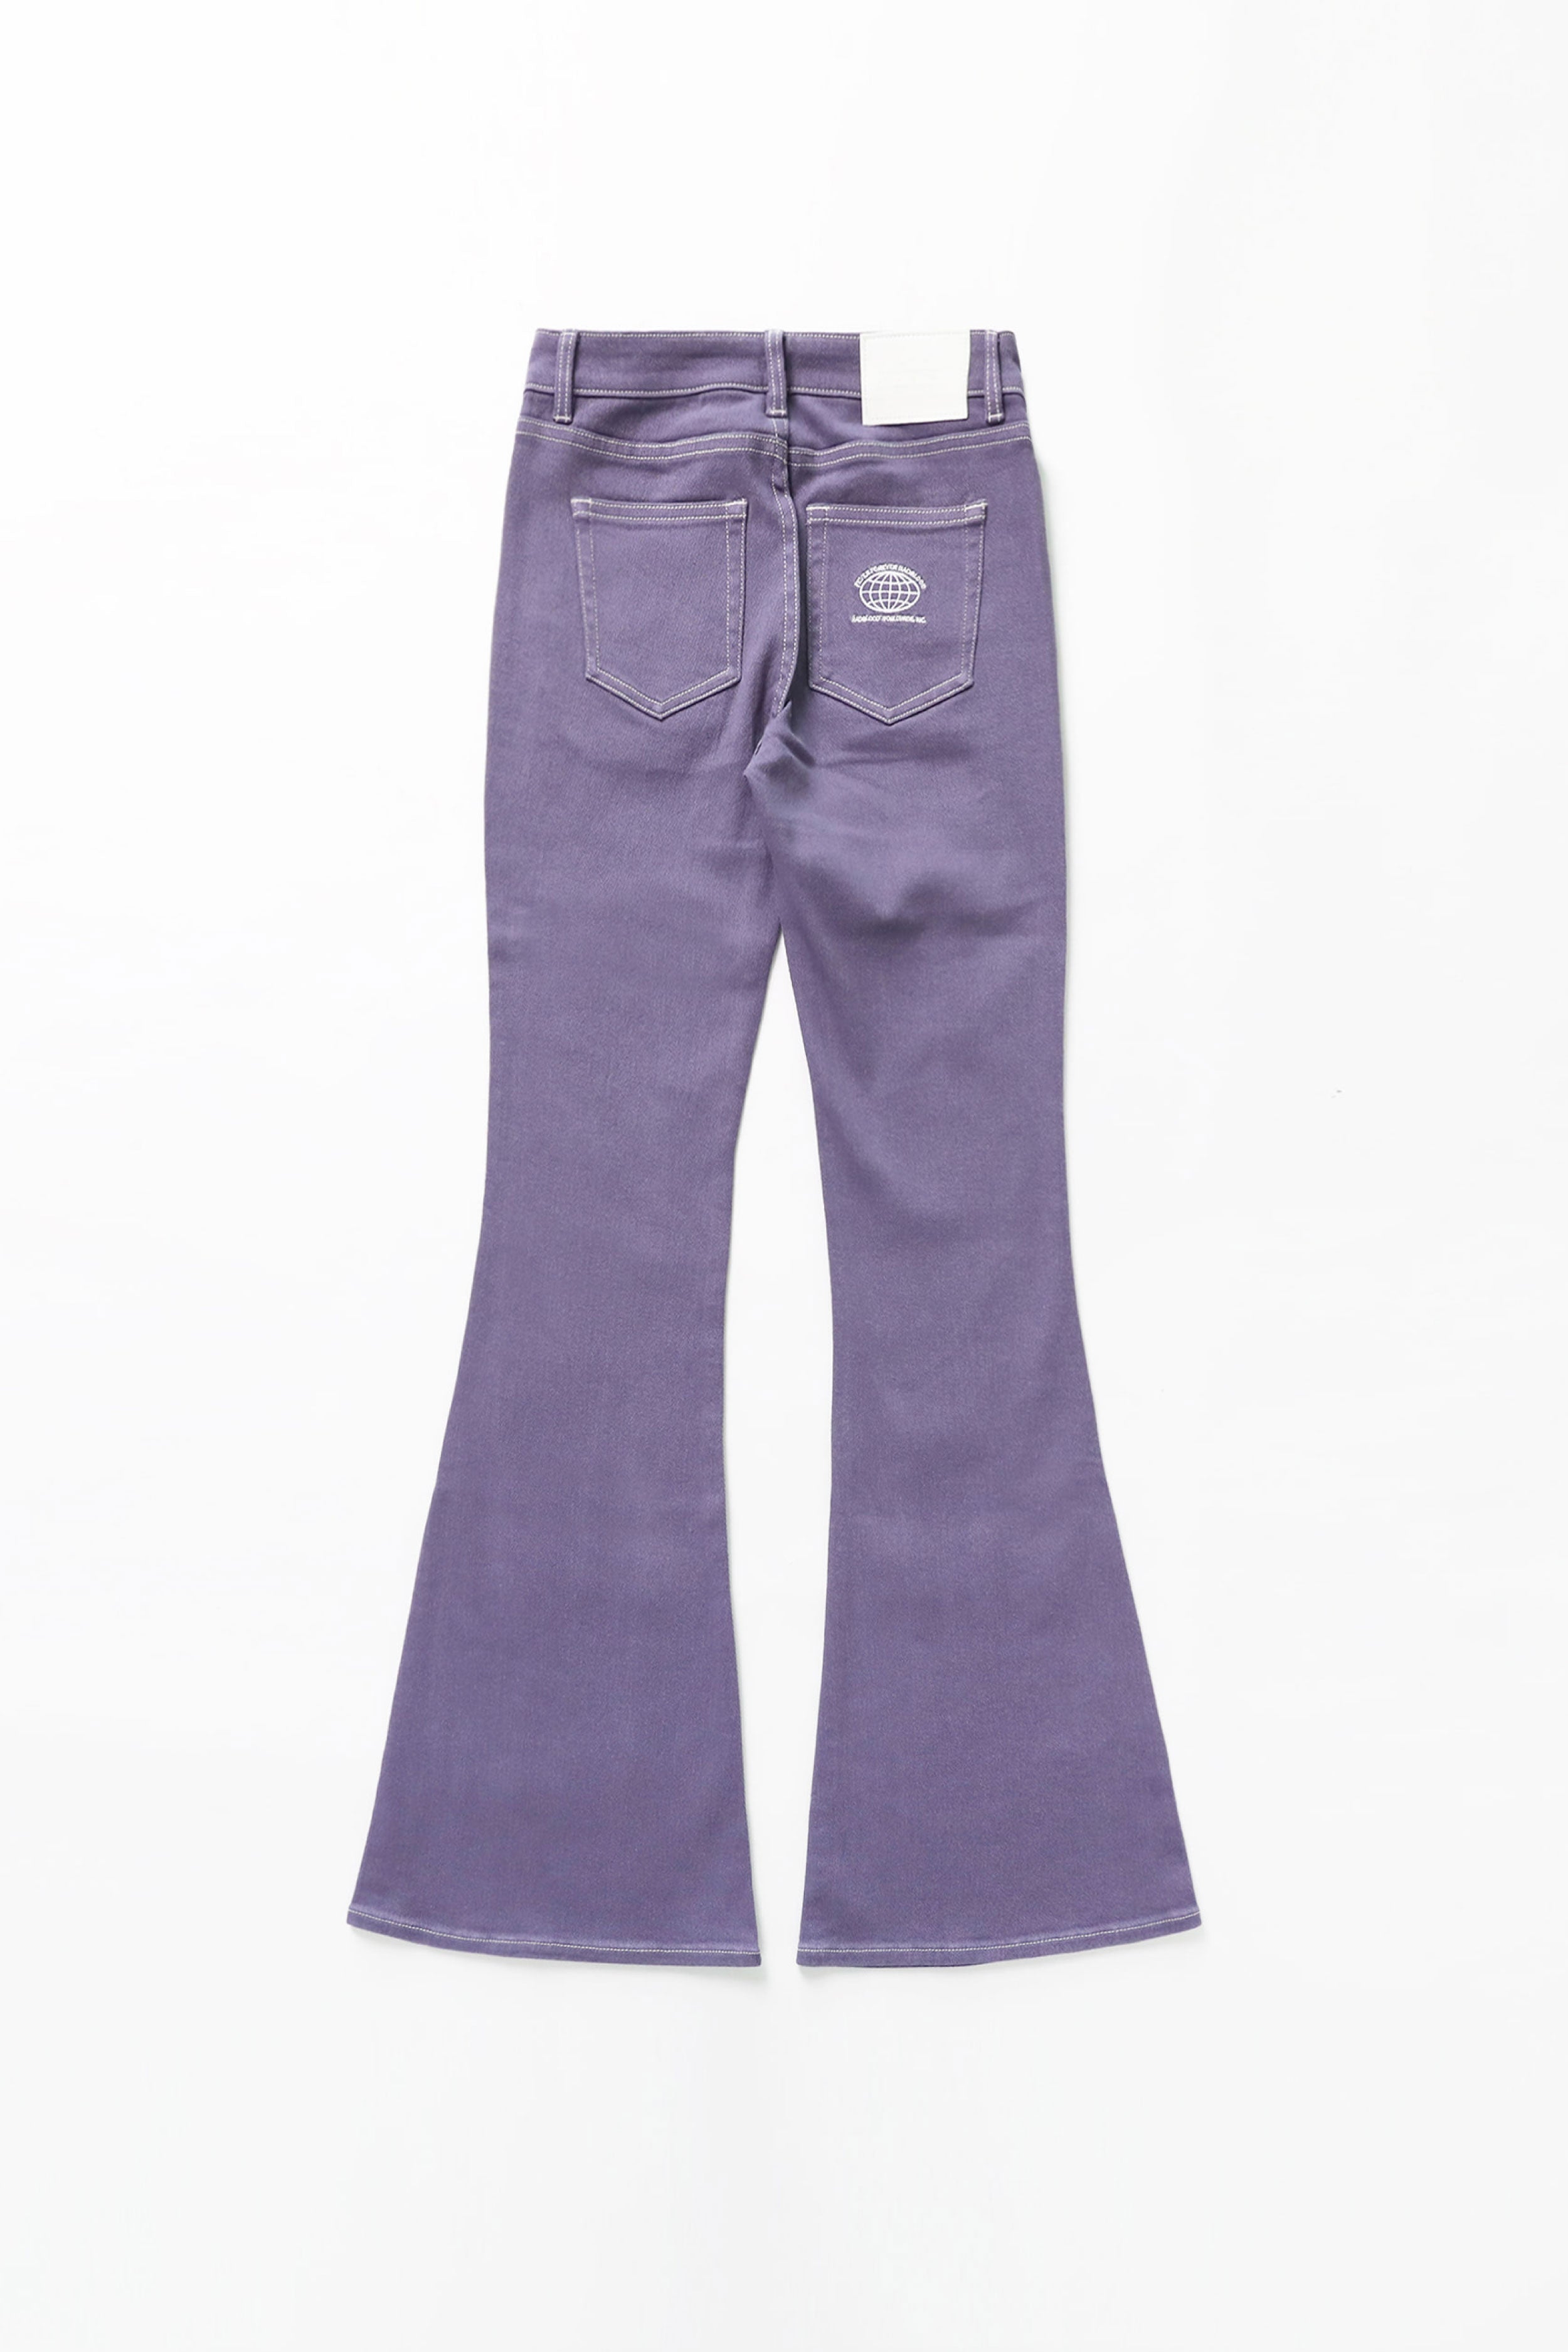 Badblood Workshop Low Rise Pantalon Color Jeans Purple